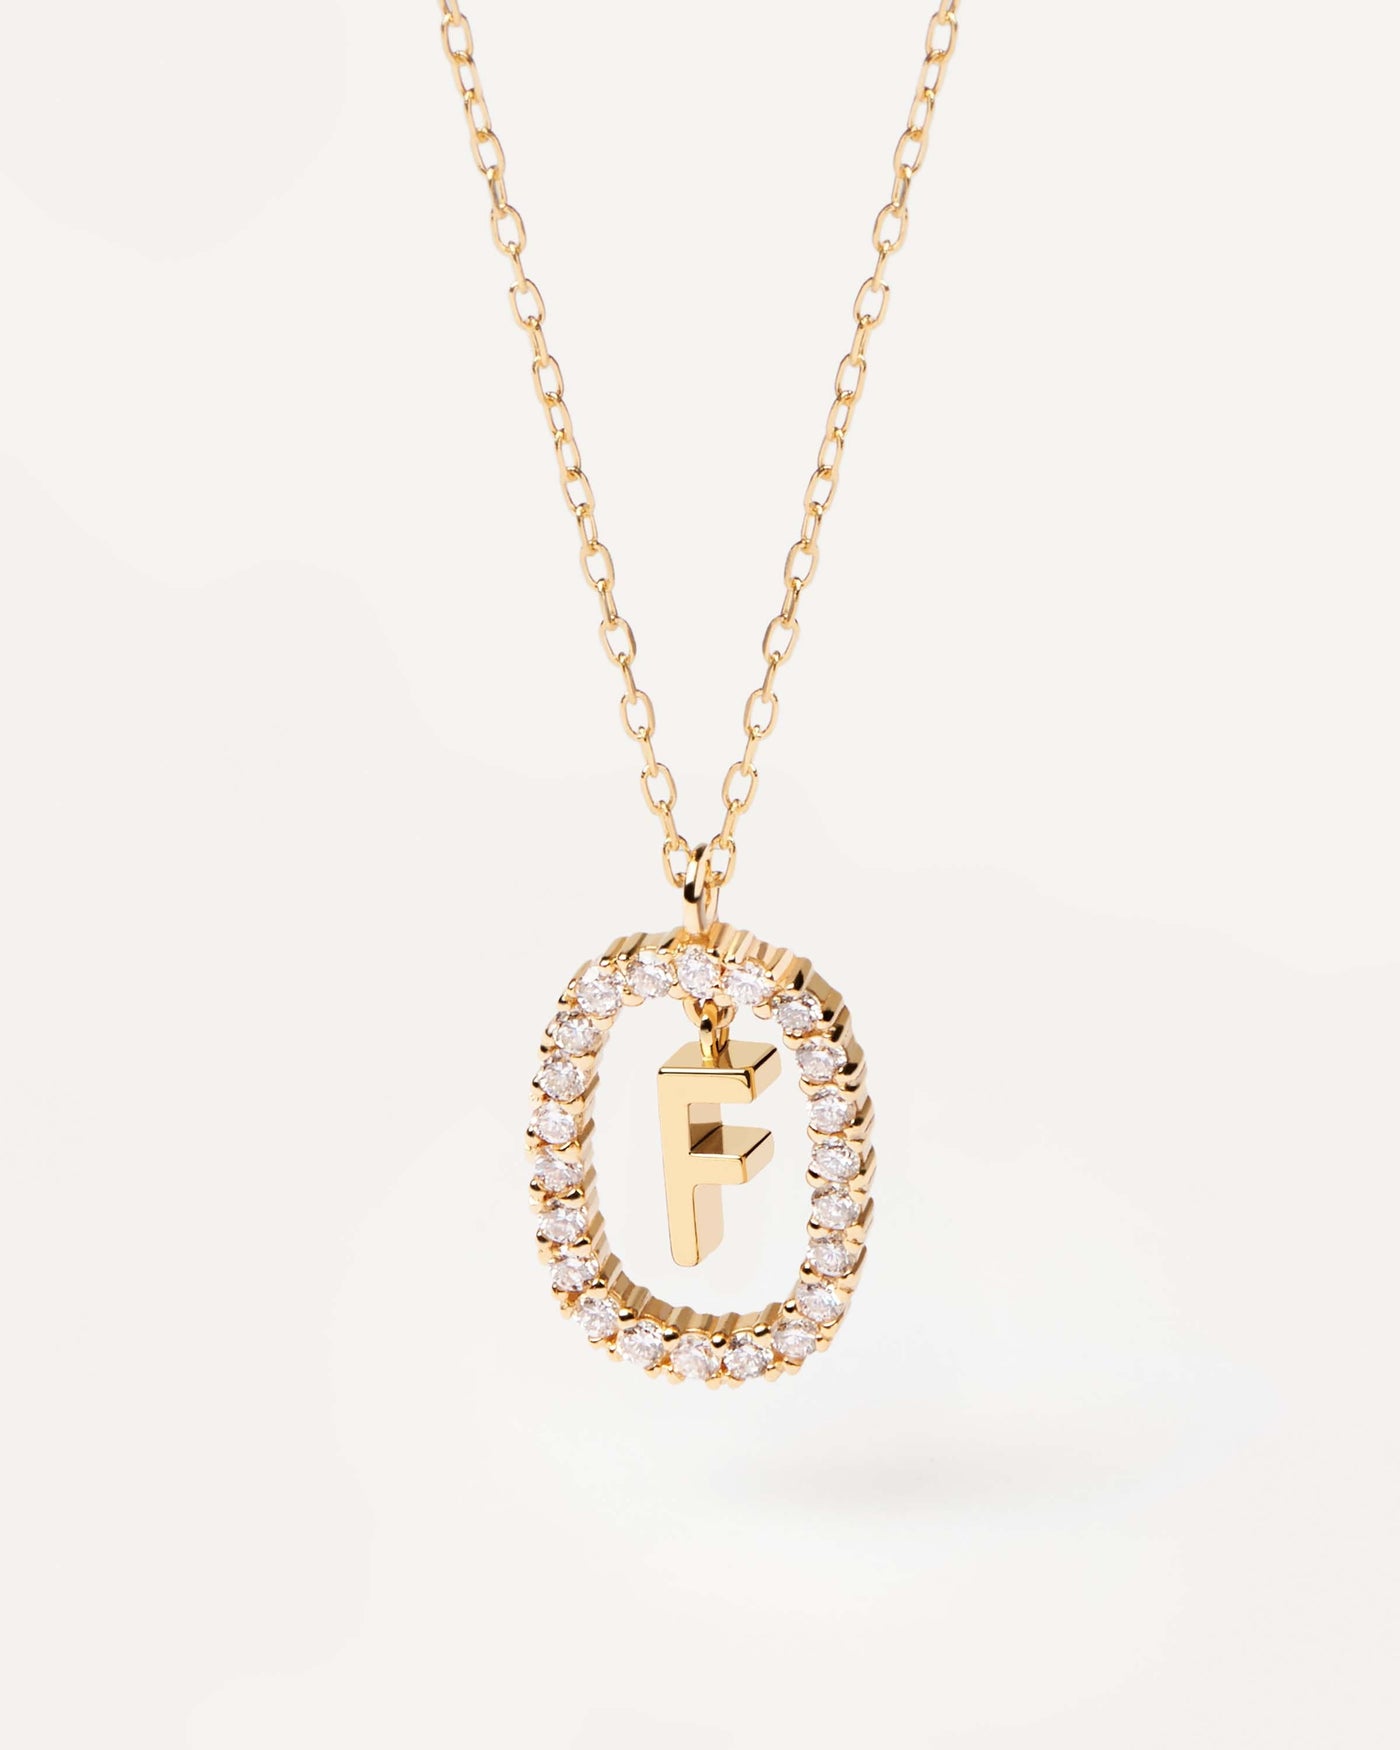 GoldHalskette mit Diamanten Buchstabe F. Erstes F-Halskette in soliden Gelbgold, umkreist von 0,33 Karat-Labor-Diamanten. Erhalten Sie die neuesten Produkte von PDPAOLA. Geben Sie Ihre Bestellung sicher auf und erhalten Sie diesen Bestseller.